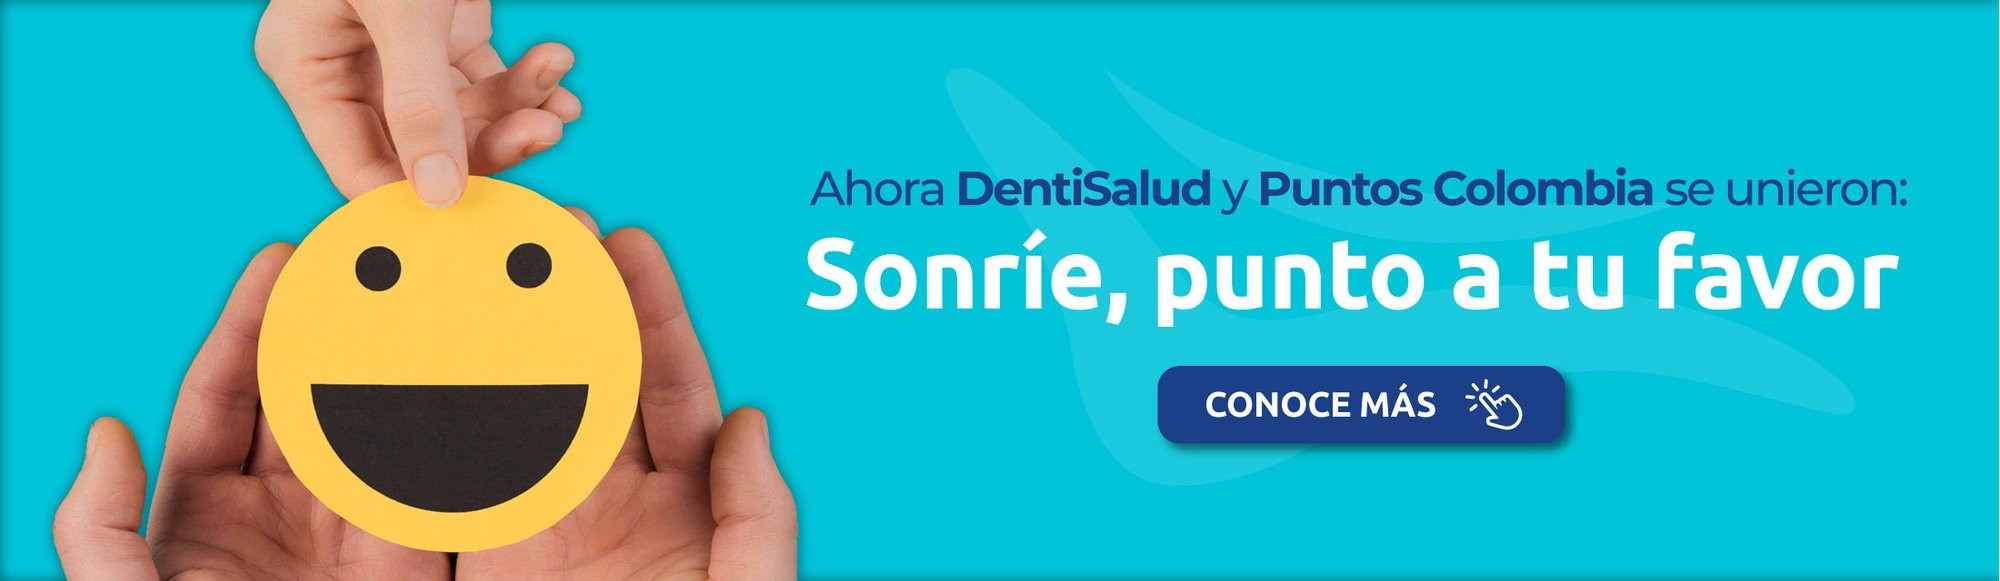 Inicia tu tratamiento con Puntos Colombia en DentiSalud